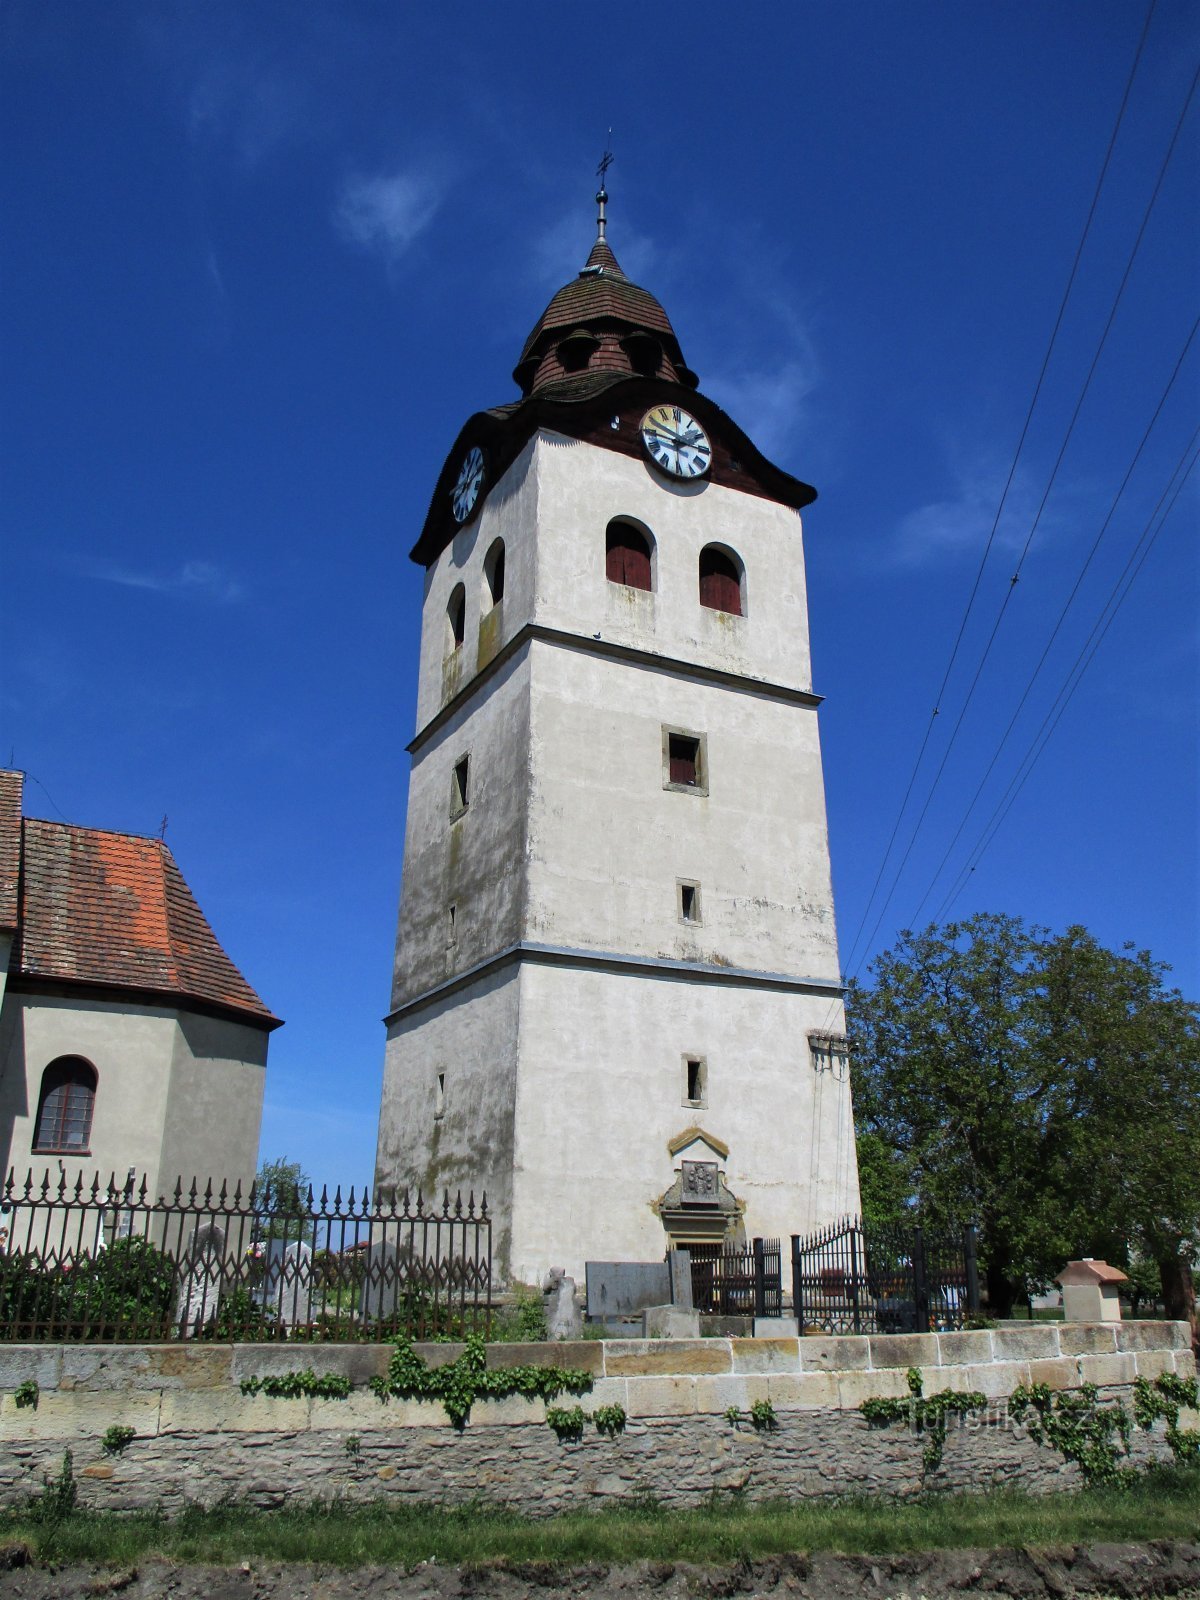 Колокольня в церкви св. Николай (Богуславице-над-Метуей, 18.5.2020)